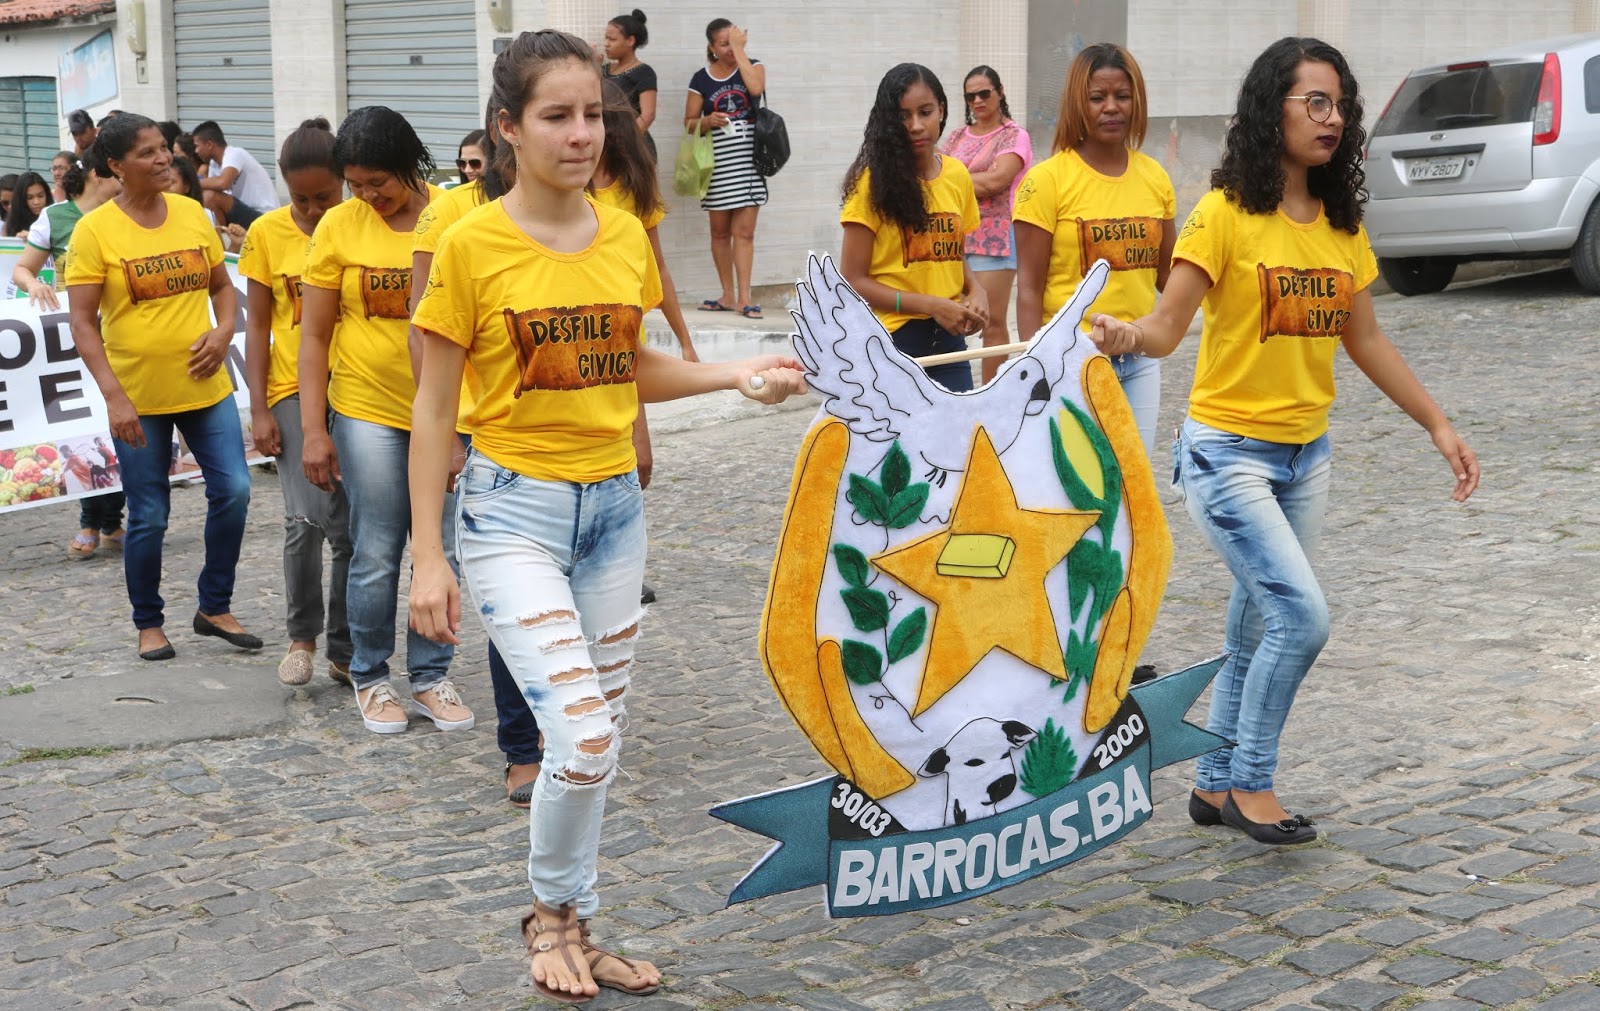 JORNAL @ NOSSA VOZ - BARROCAS - BA: Hoje é dia de Brasil na Copa